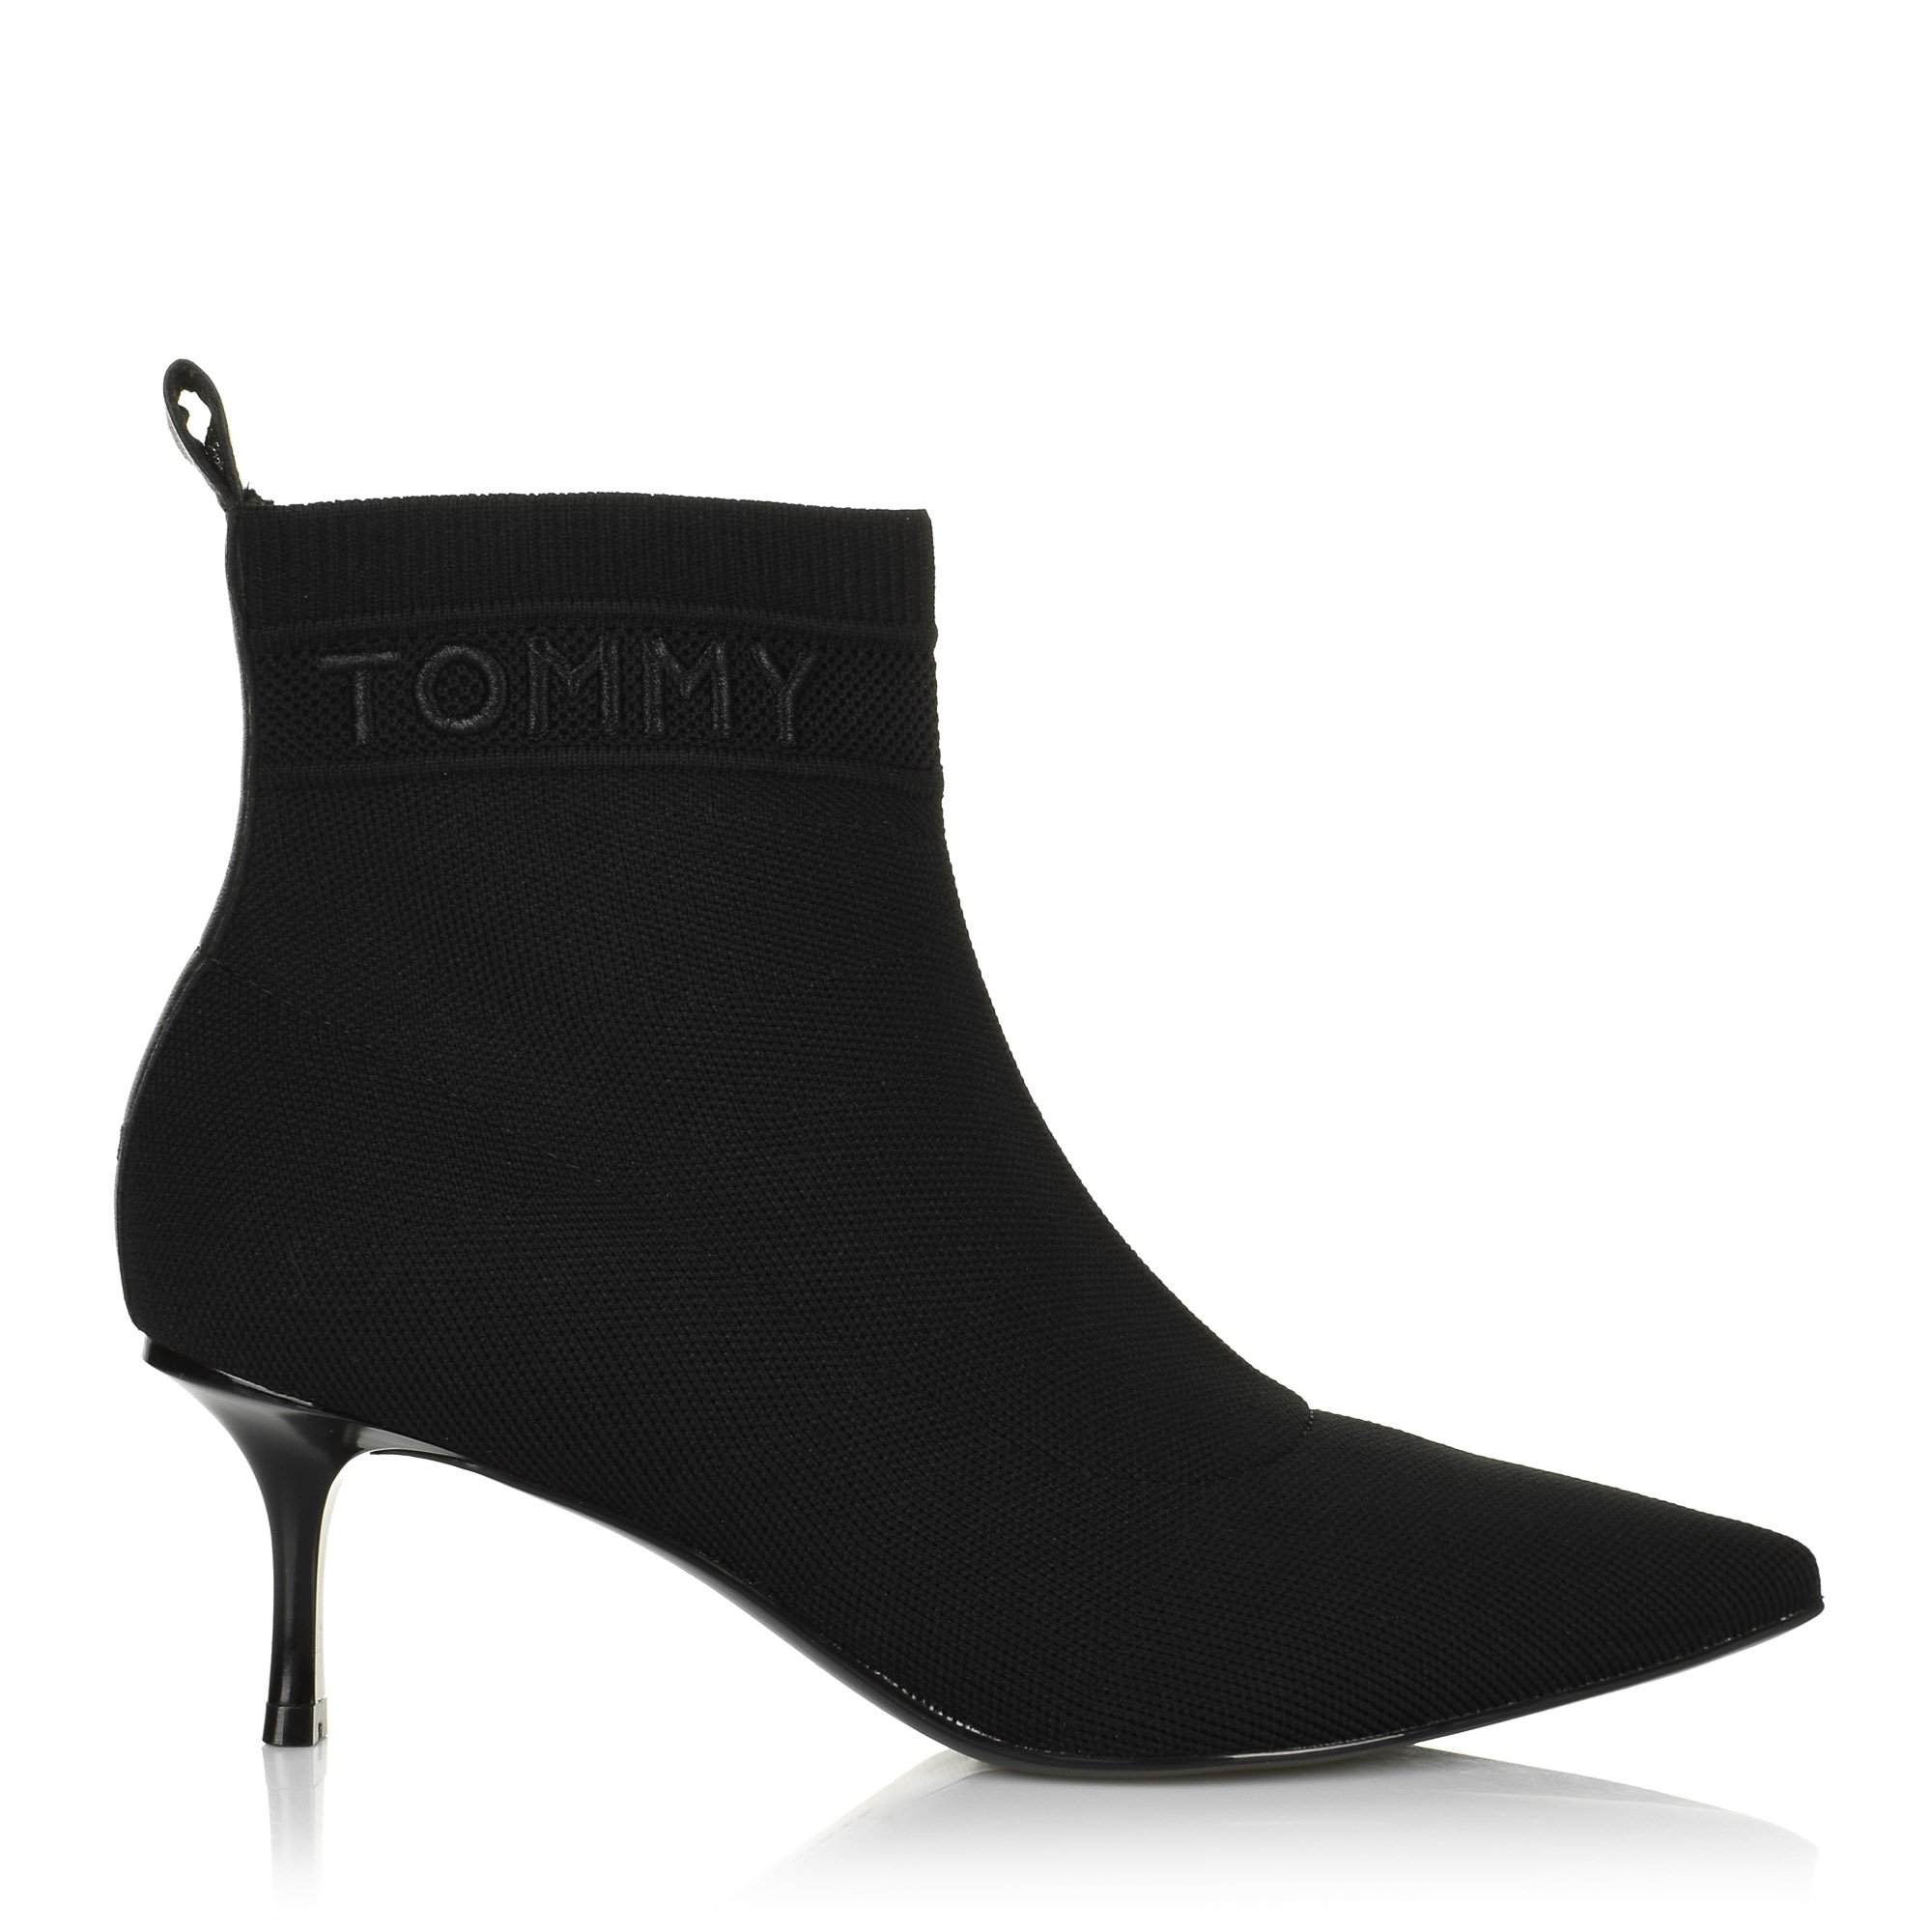 Μποτάκια Tommy Hilfiger FW0FW04973 Γυναίκα  Γυναικείο παπούτσι